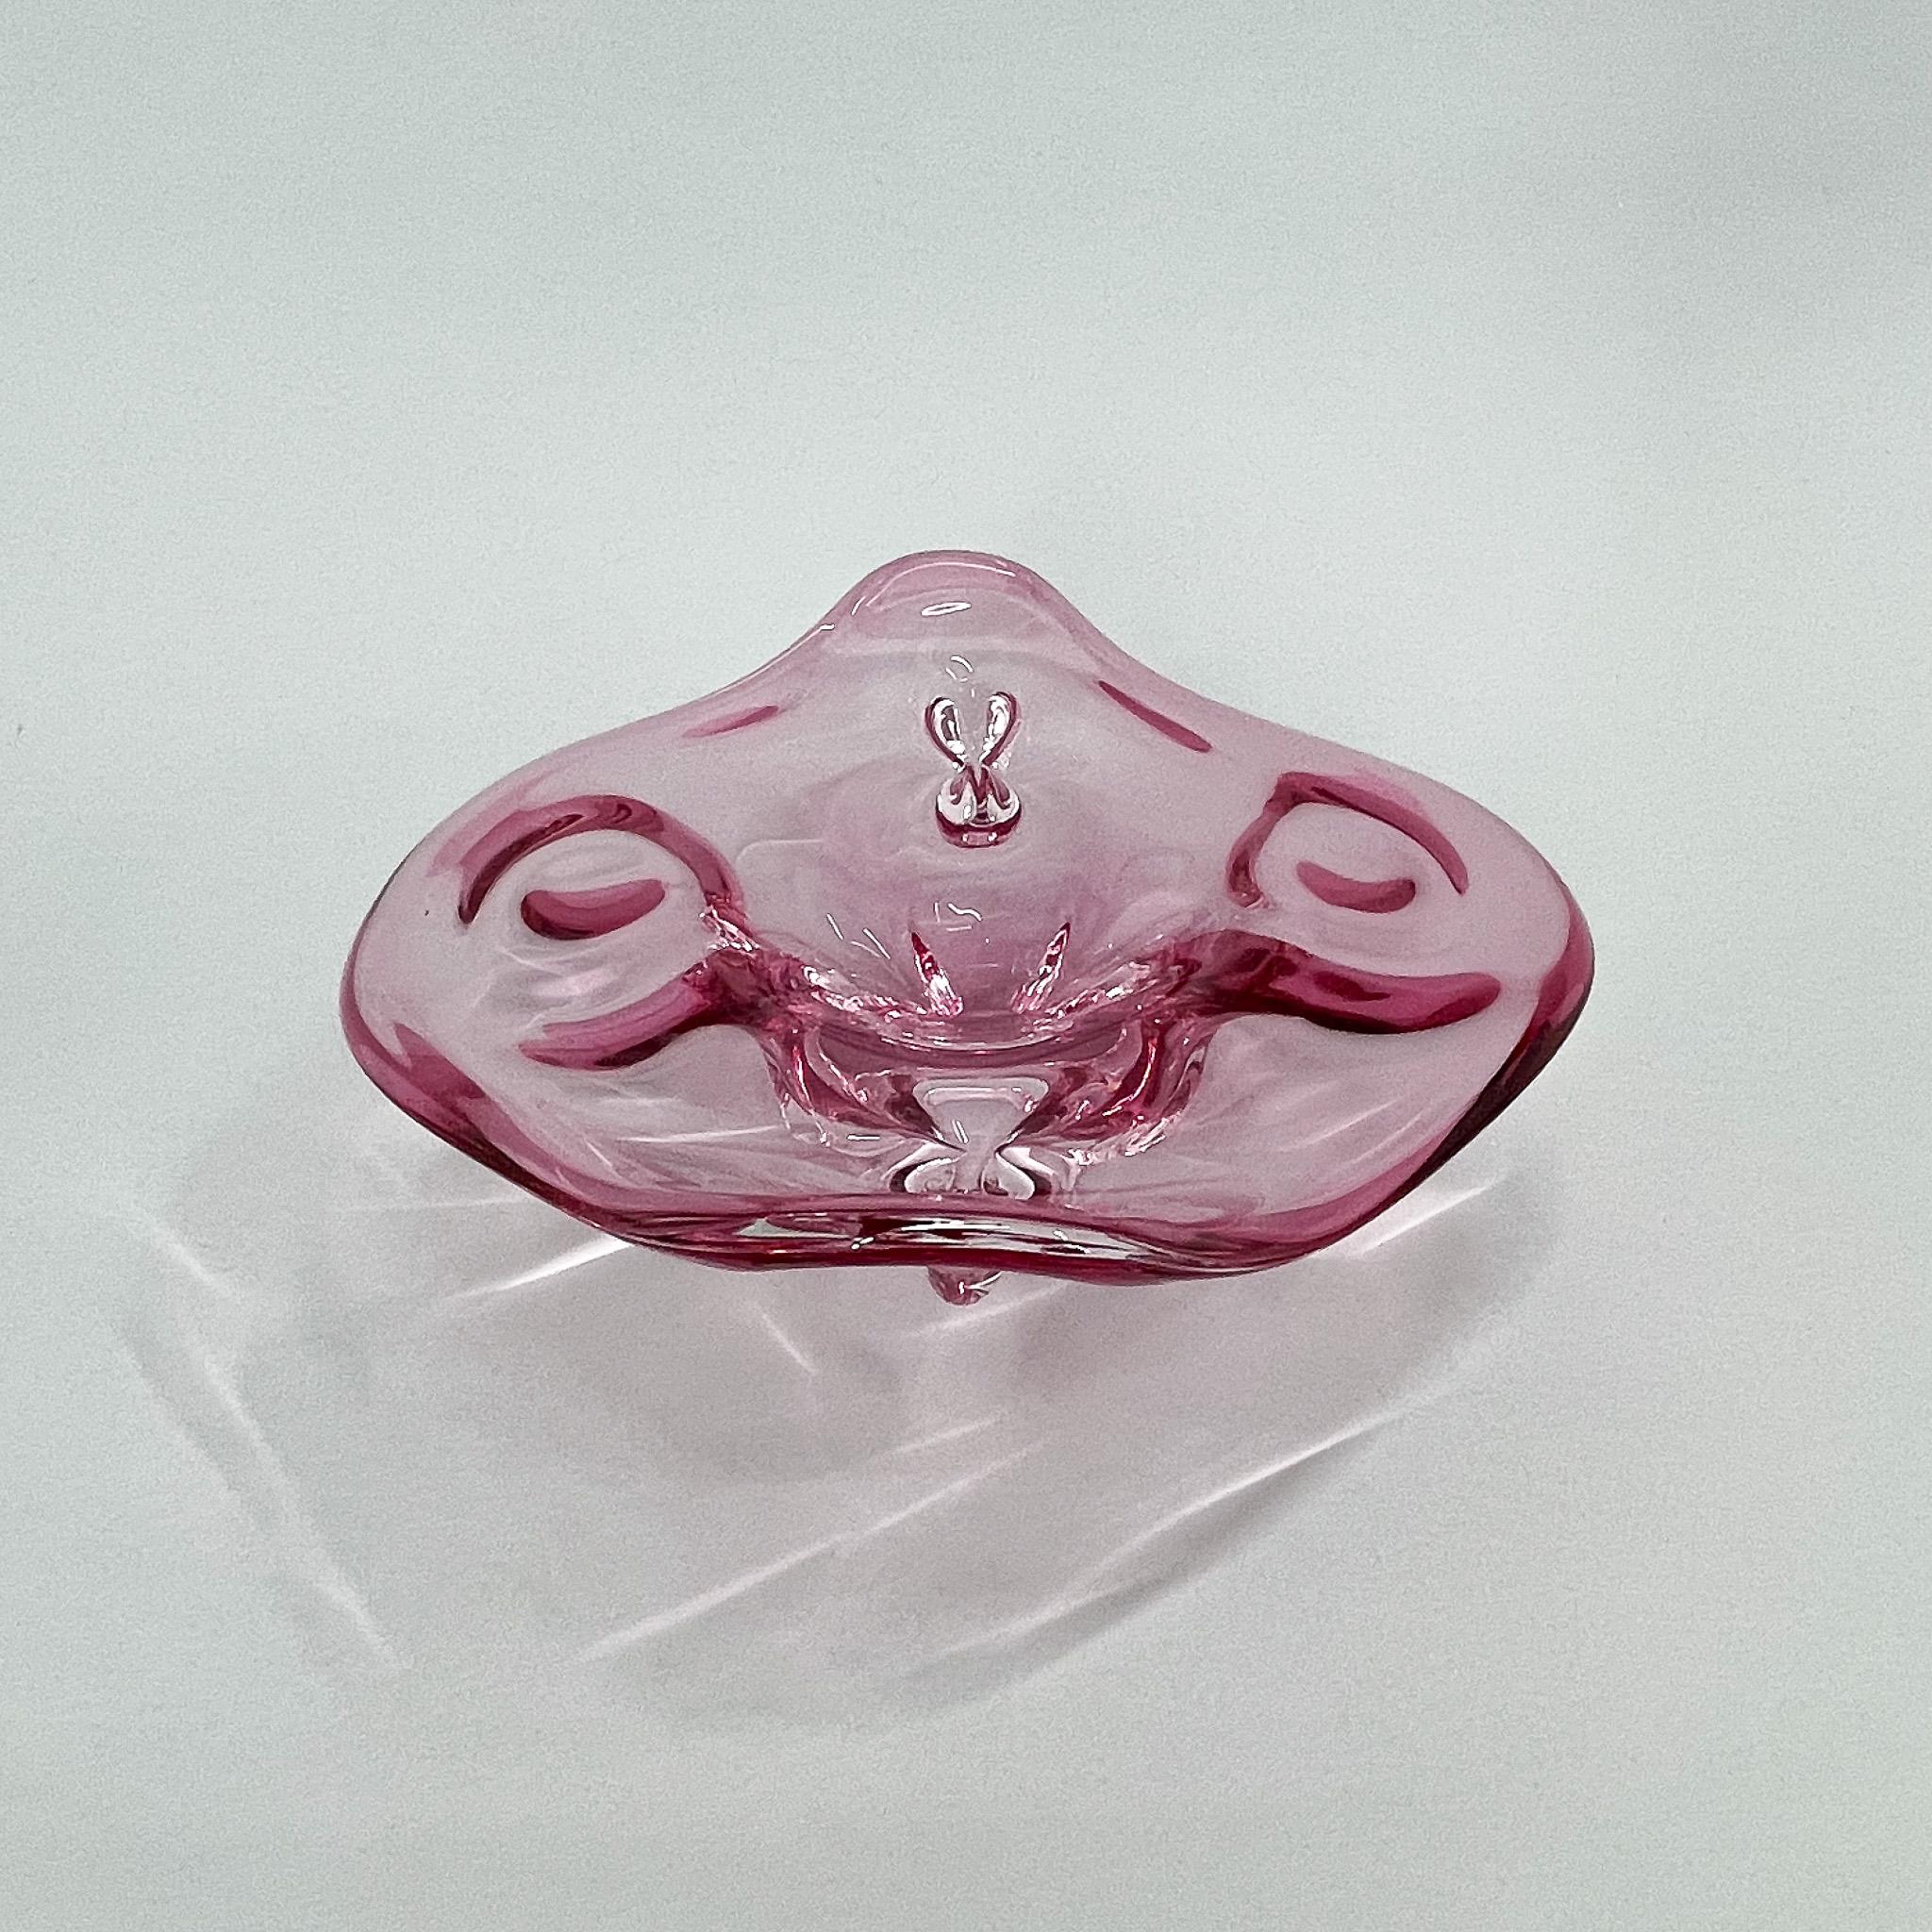 1960s Czech Art Glass Bowl by Josef Hospodka for Chribska Glassworks For Sale 1